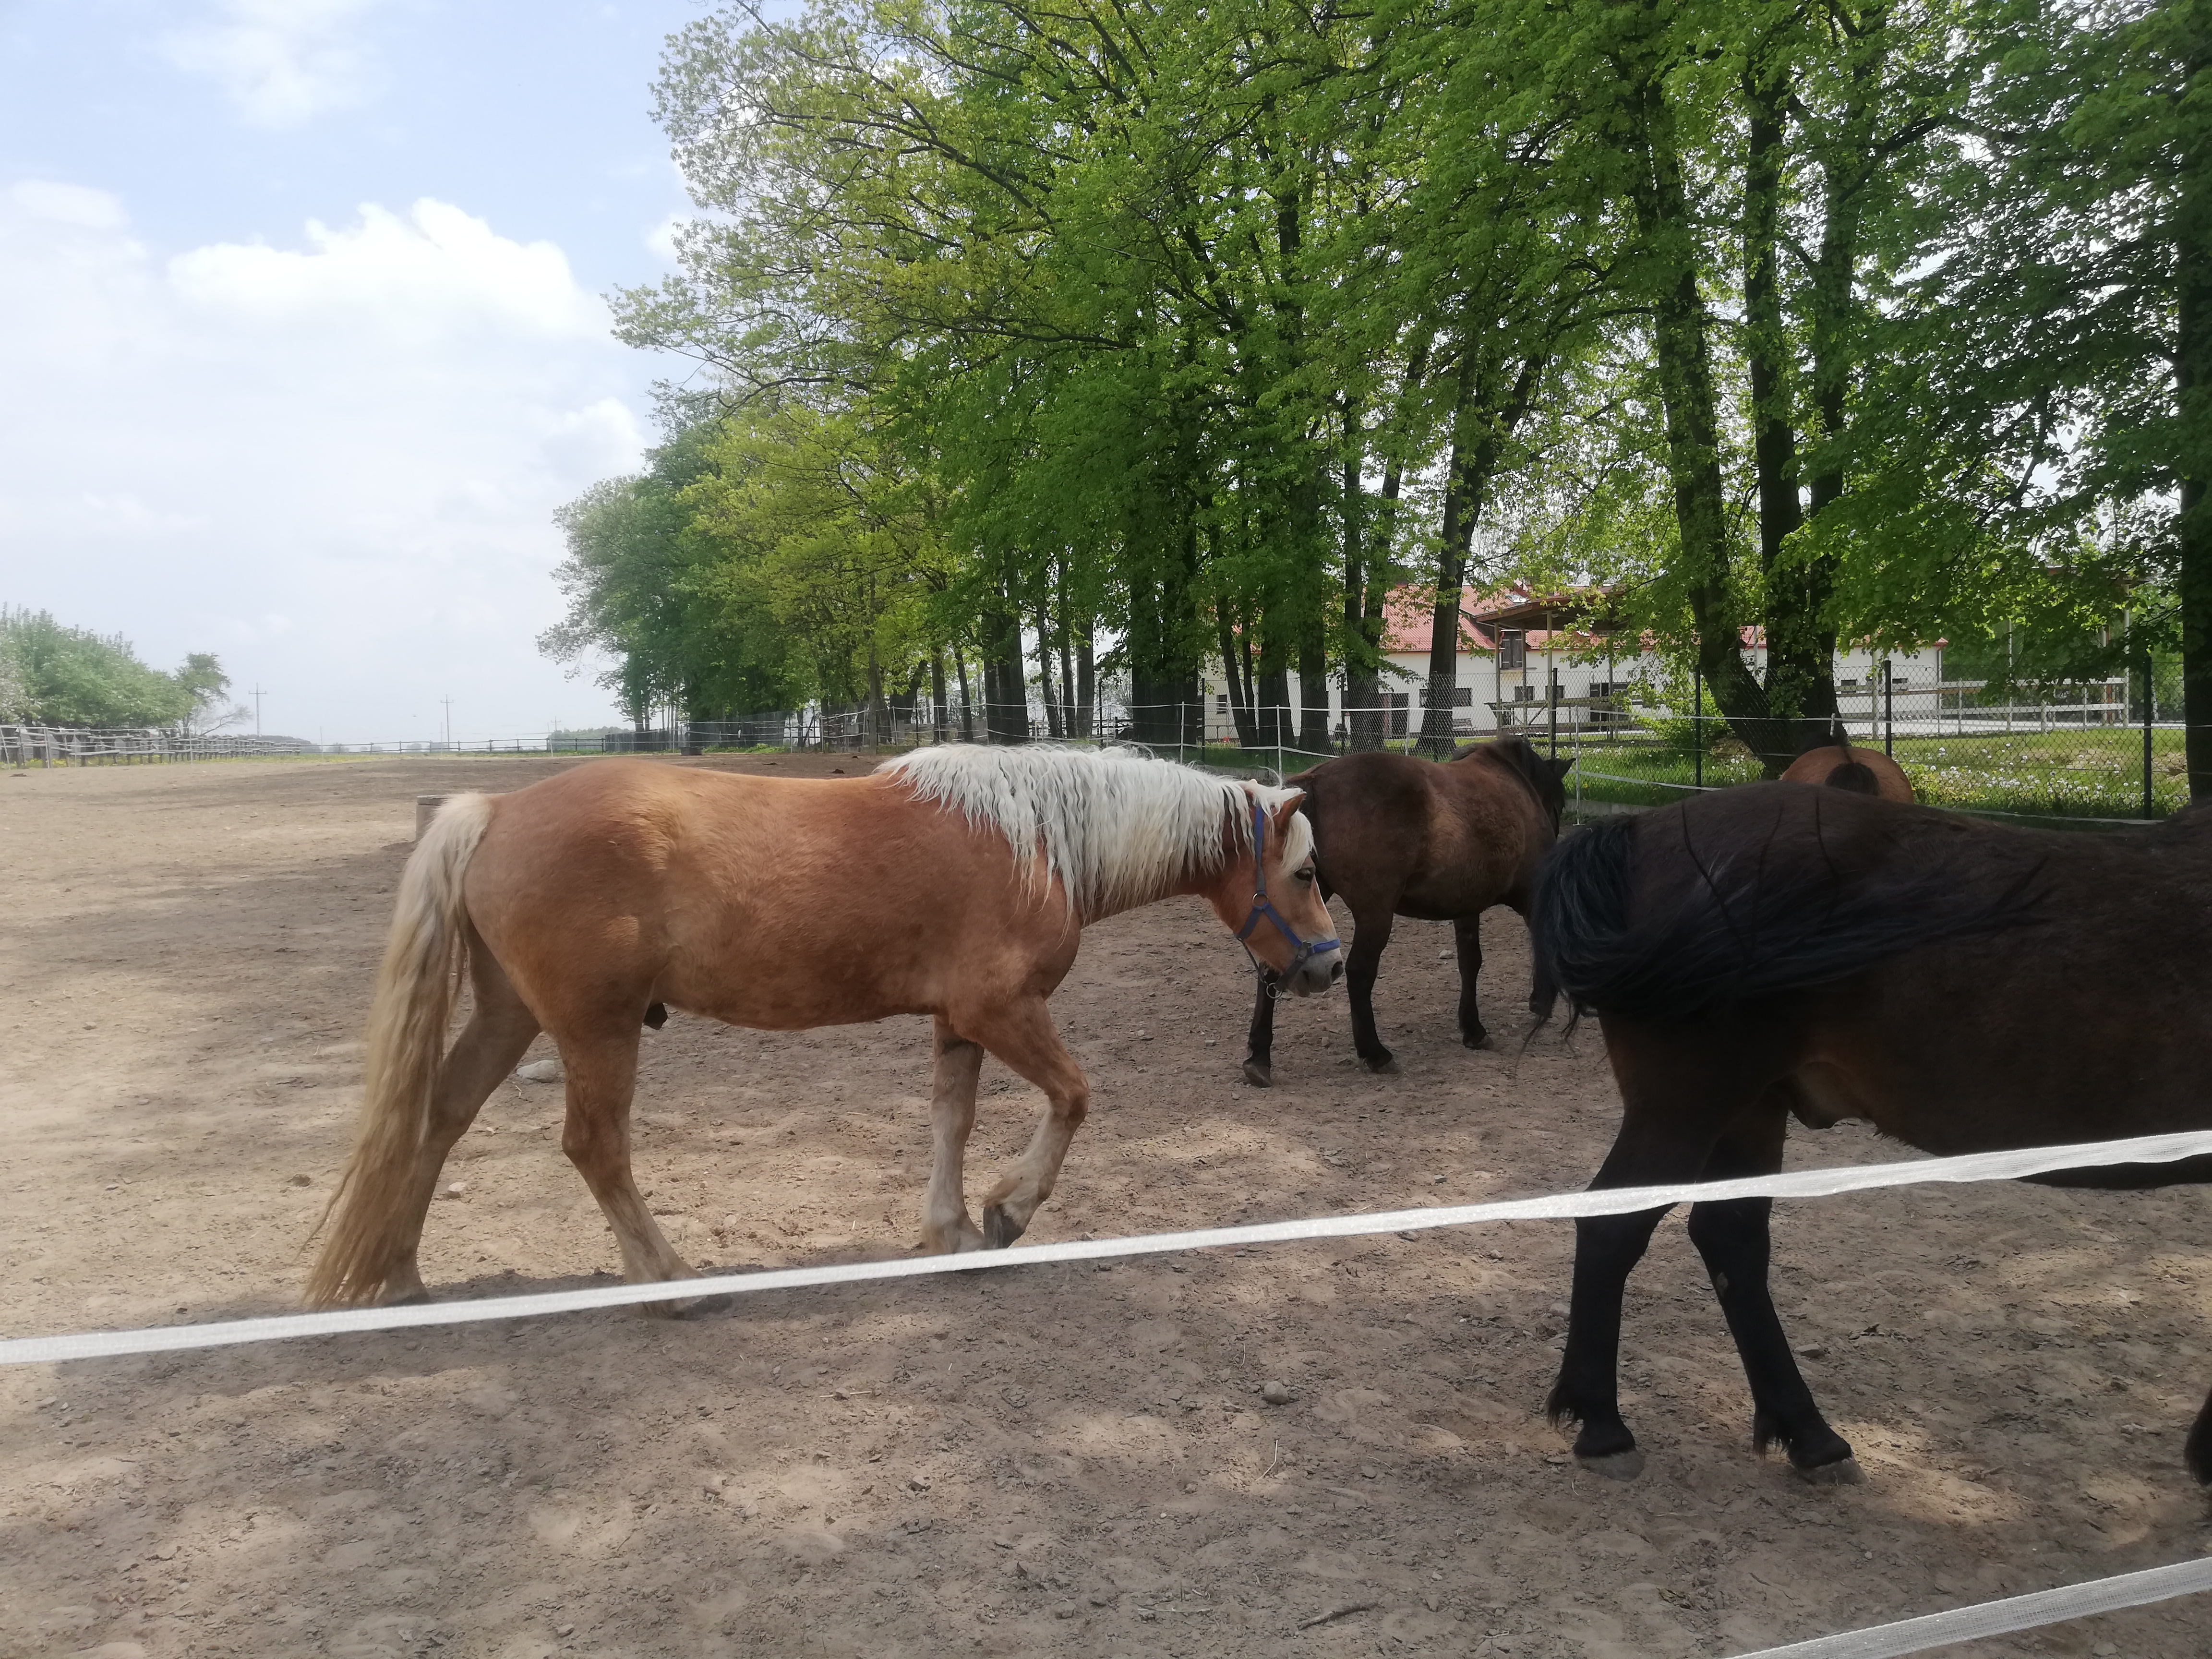 Trzy konie na wybiegu, maści odpowiednio kasztanowatej, gniadej i karej.